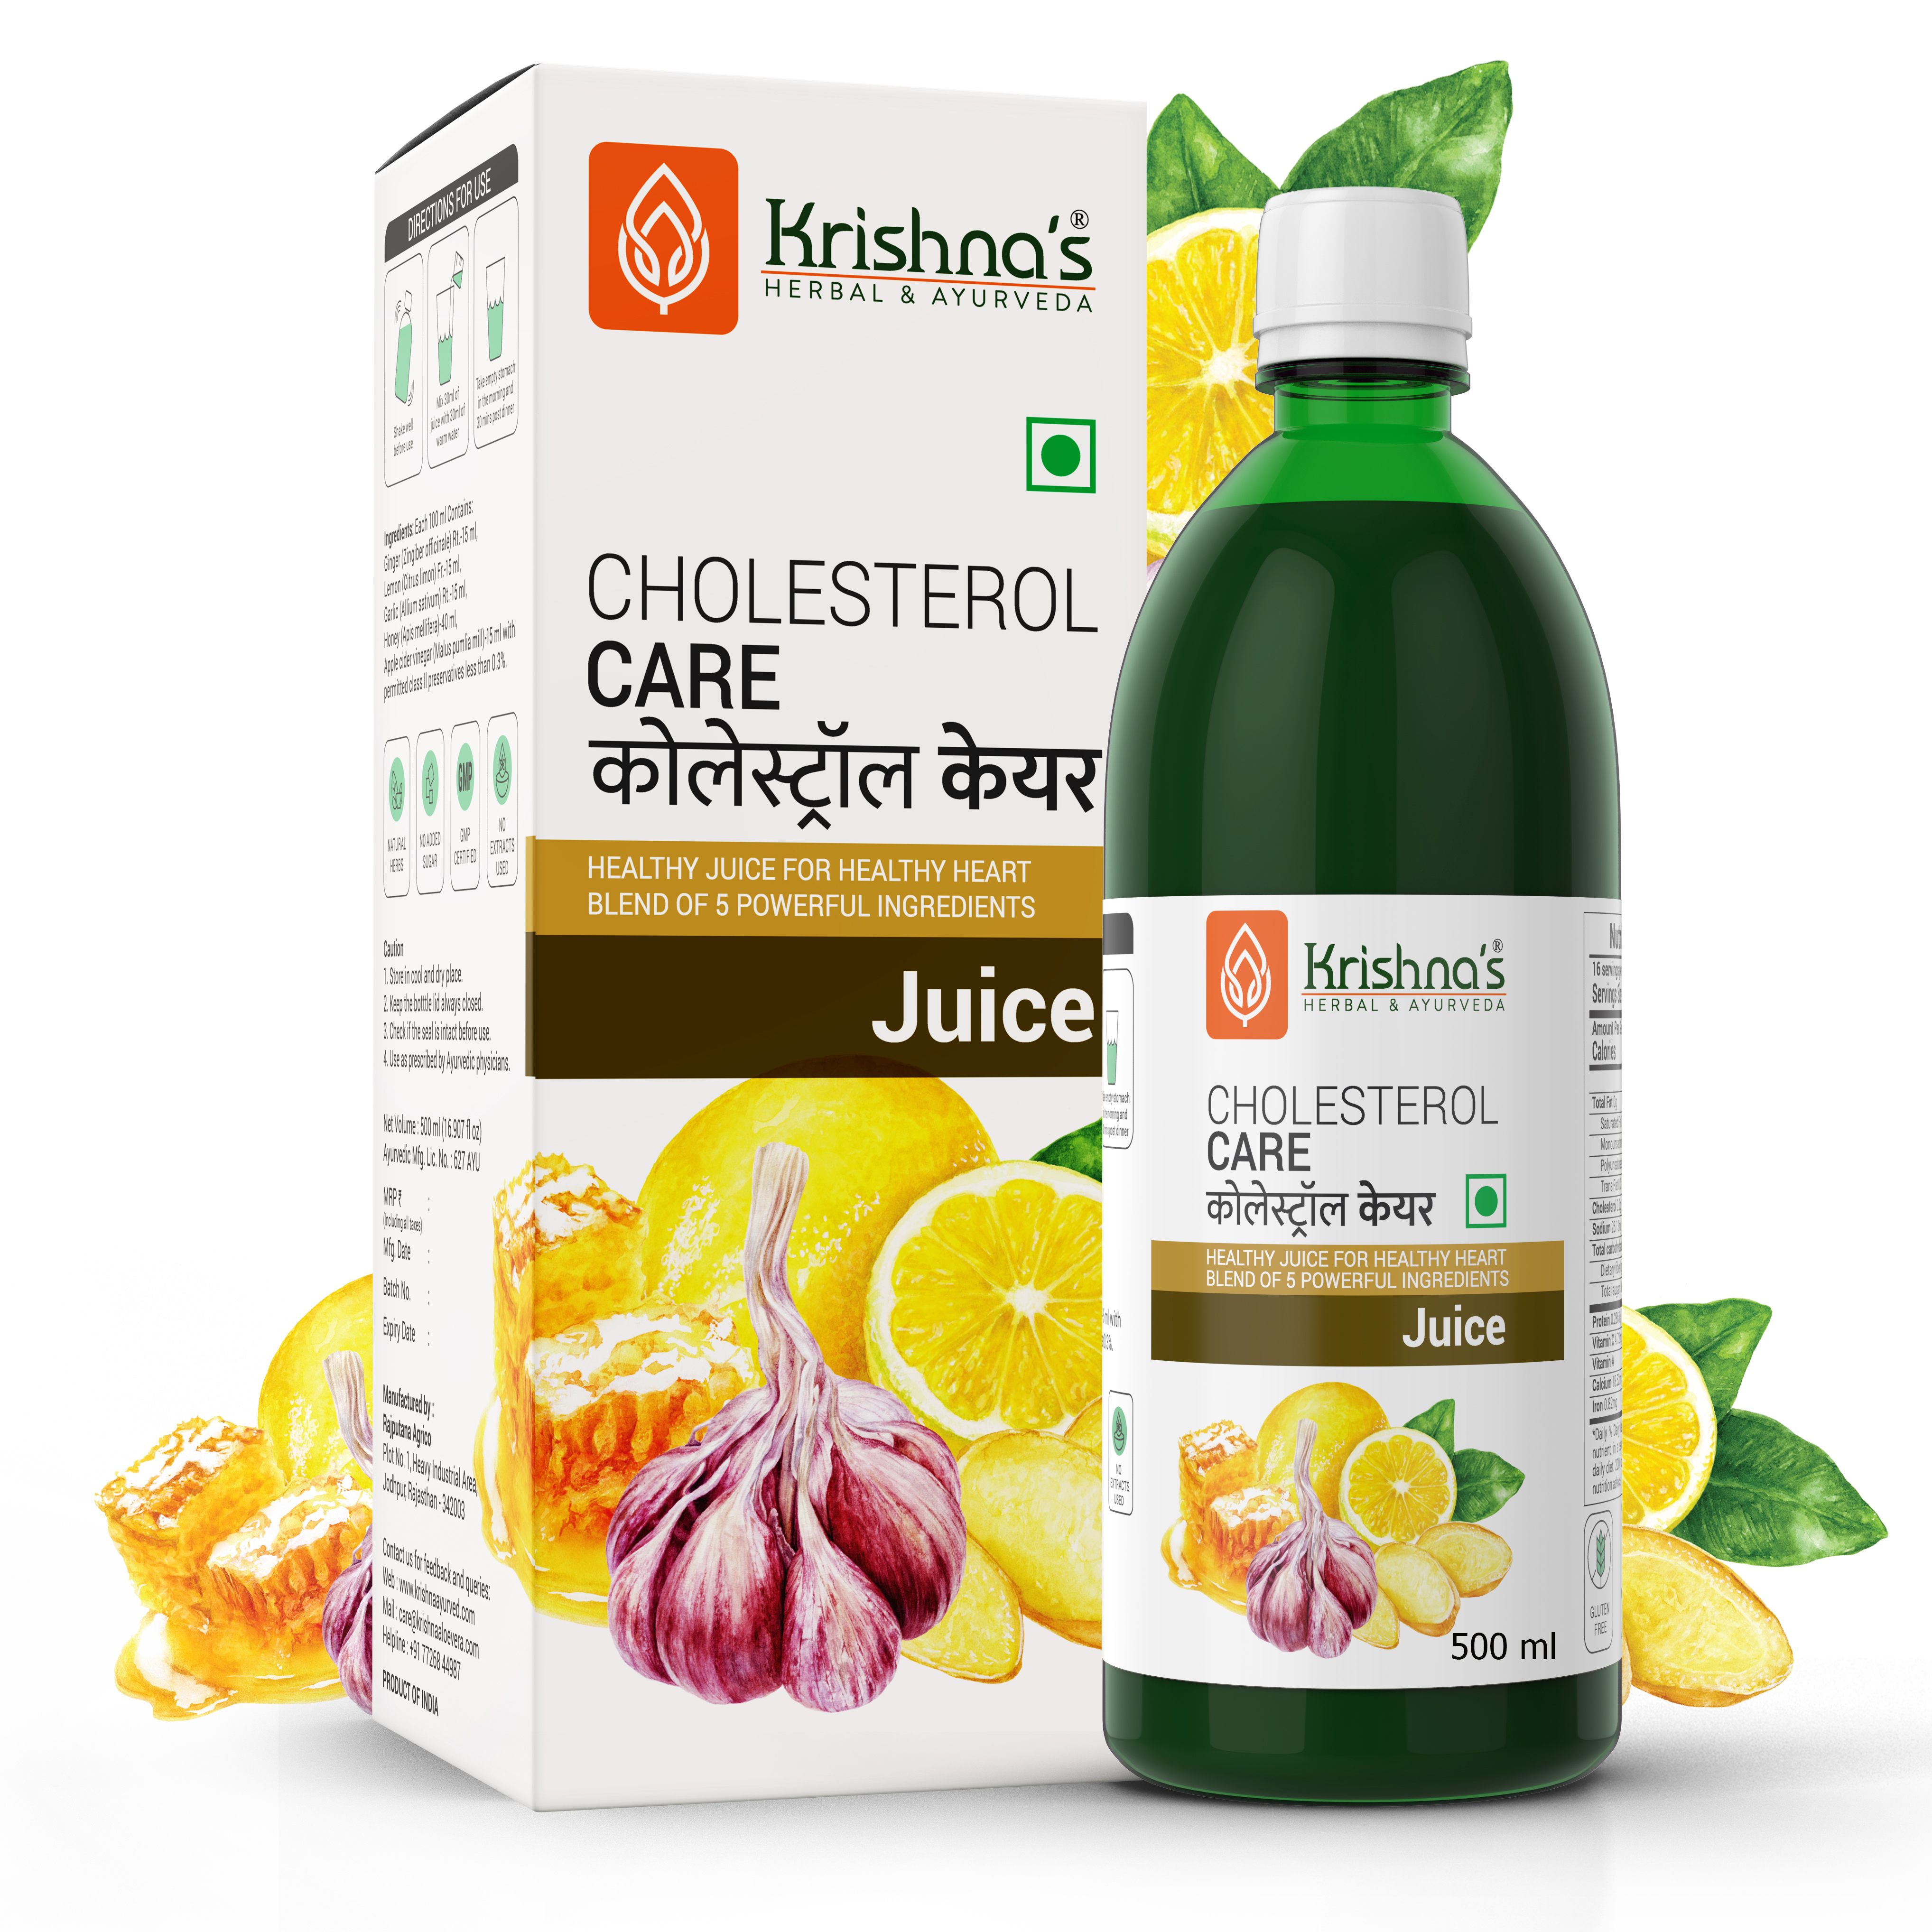 Buy Krishna Herbal Cholesterol Care Juice at Best Price Online